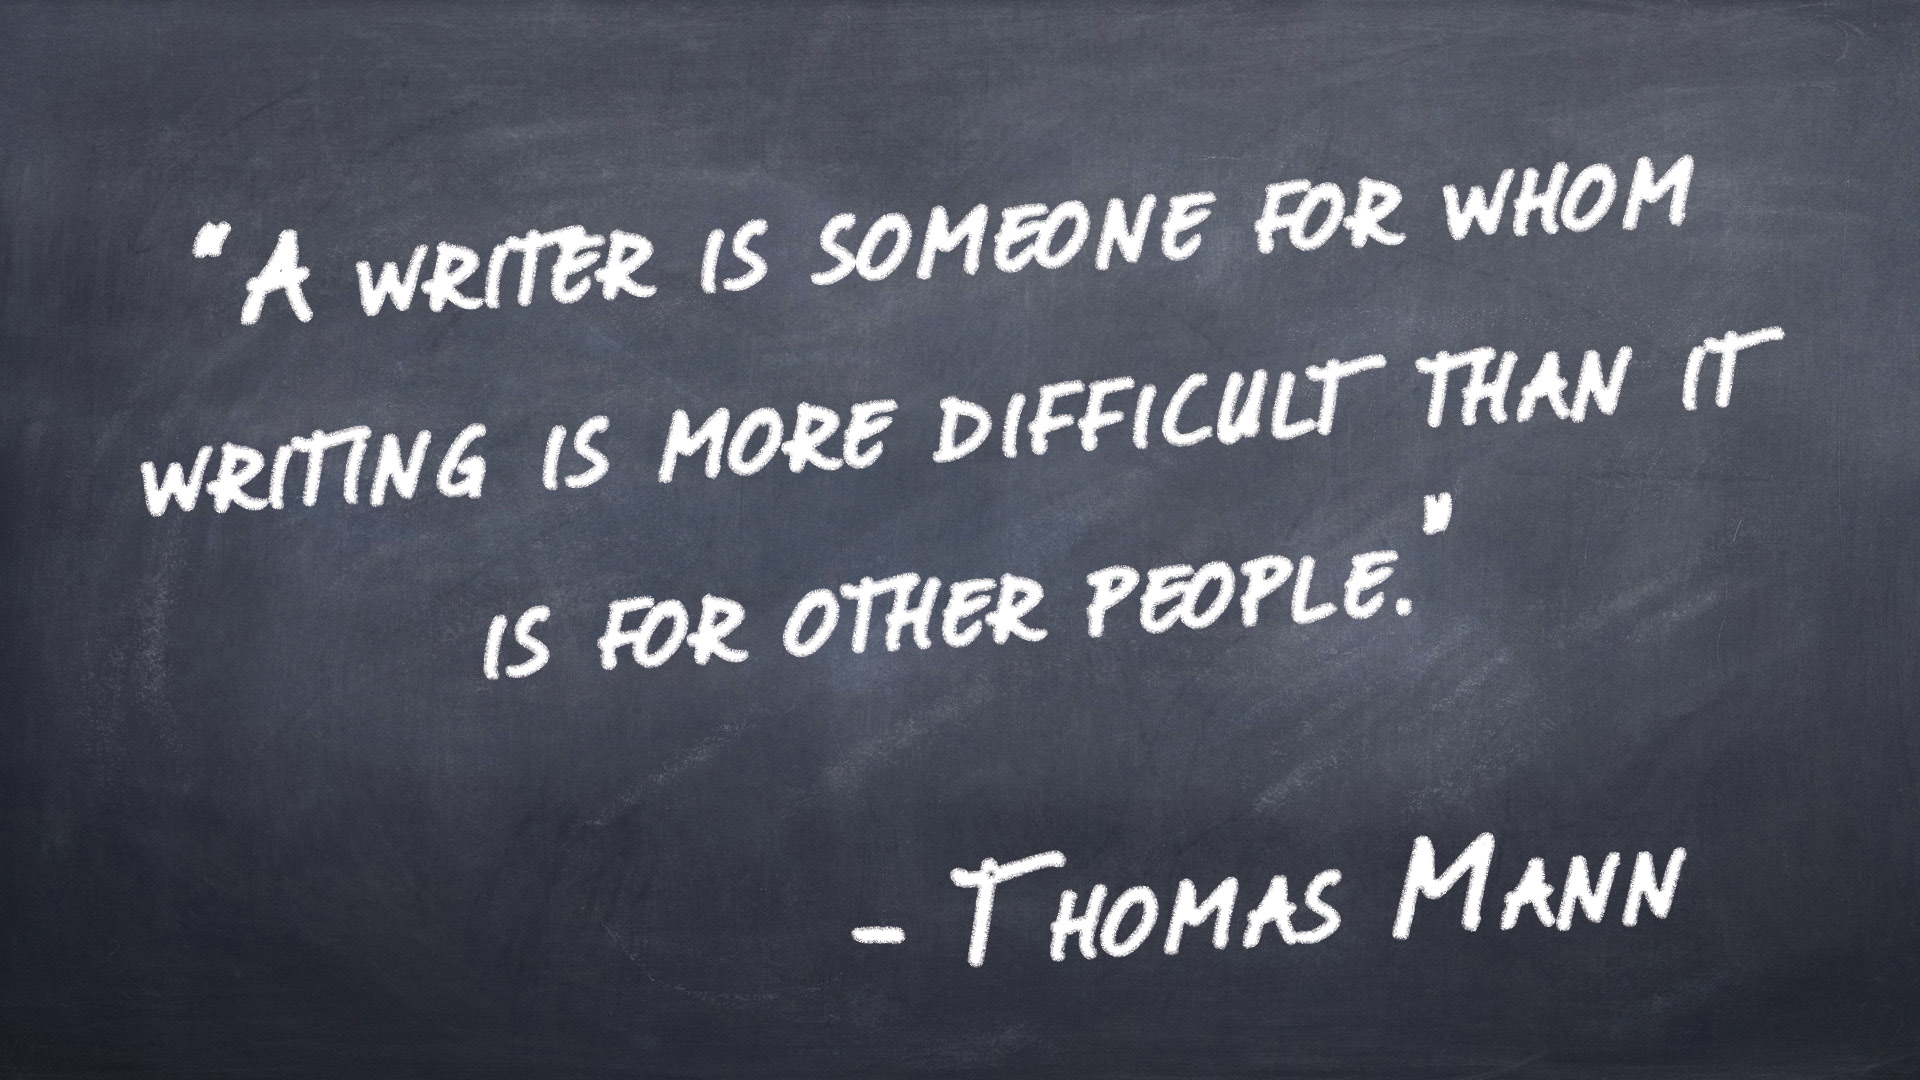 Thomas Mann quote